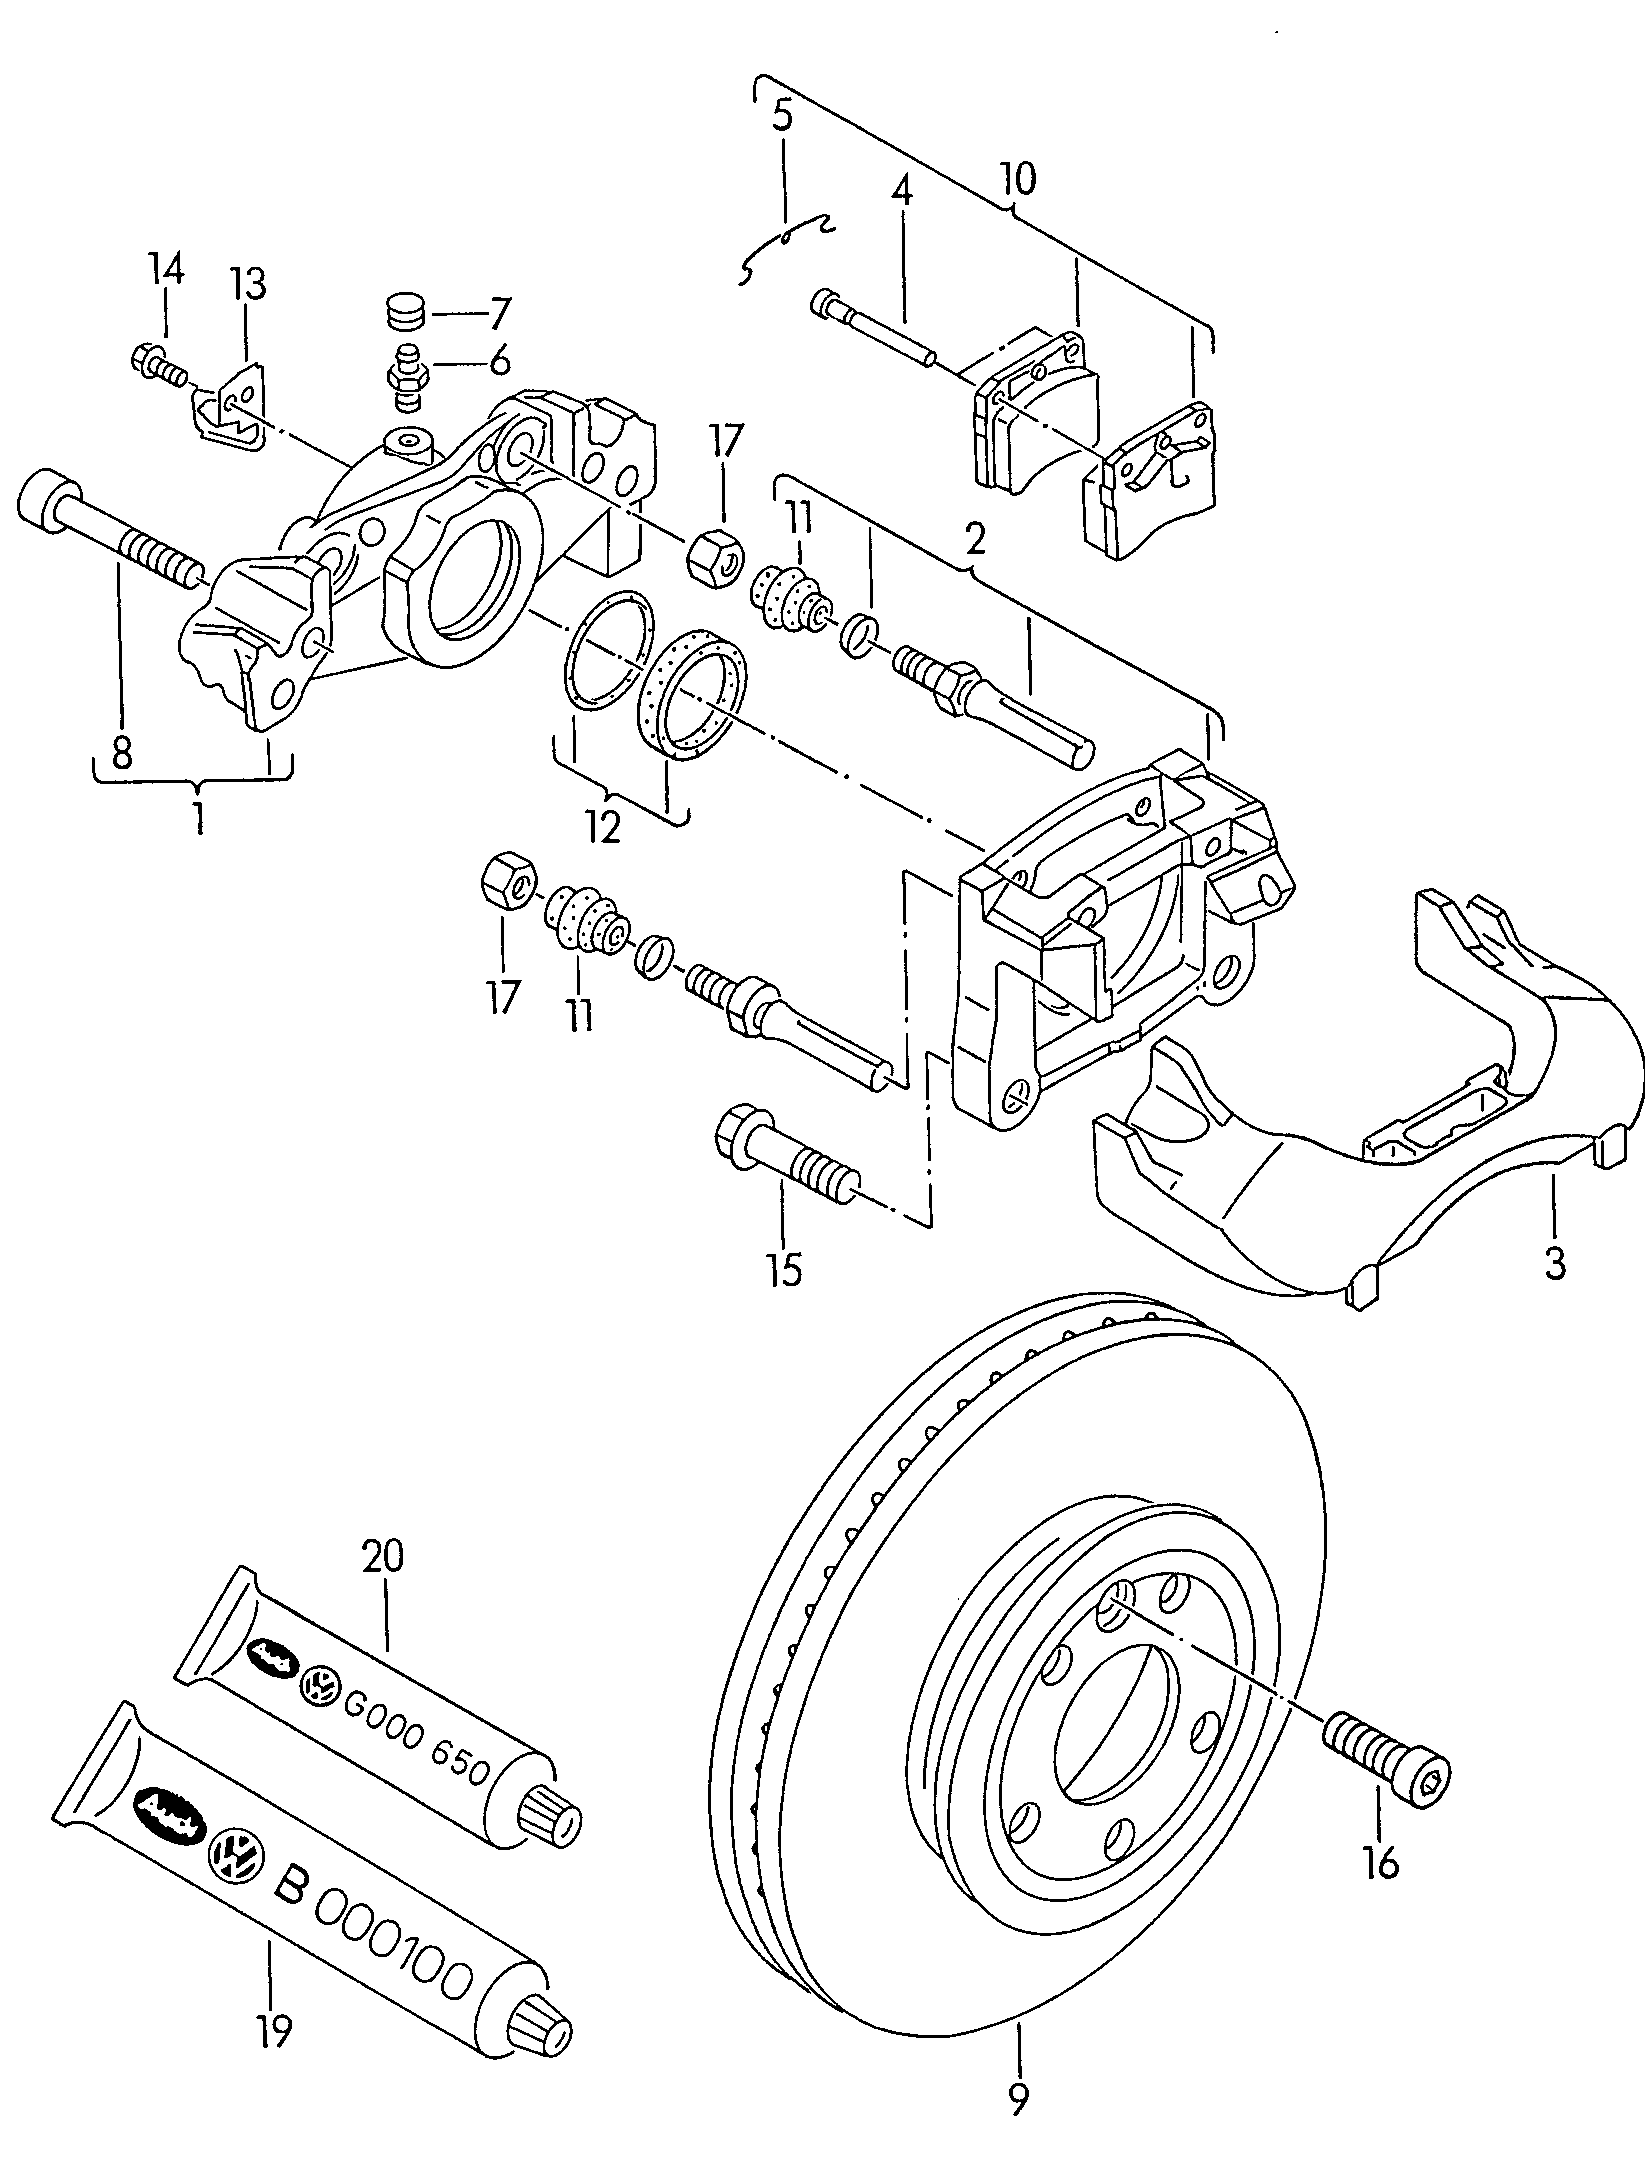 freno de cuerpo tipo marcodisco de freno (ventilado) delantero - Transporter - tr